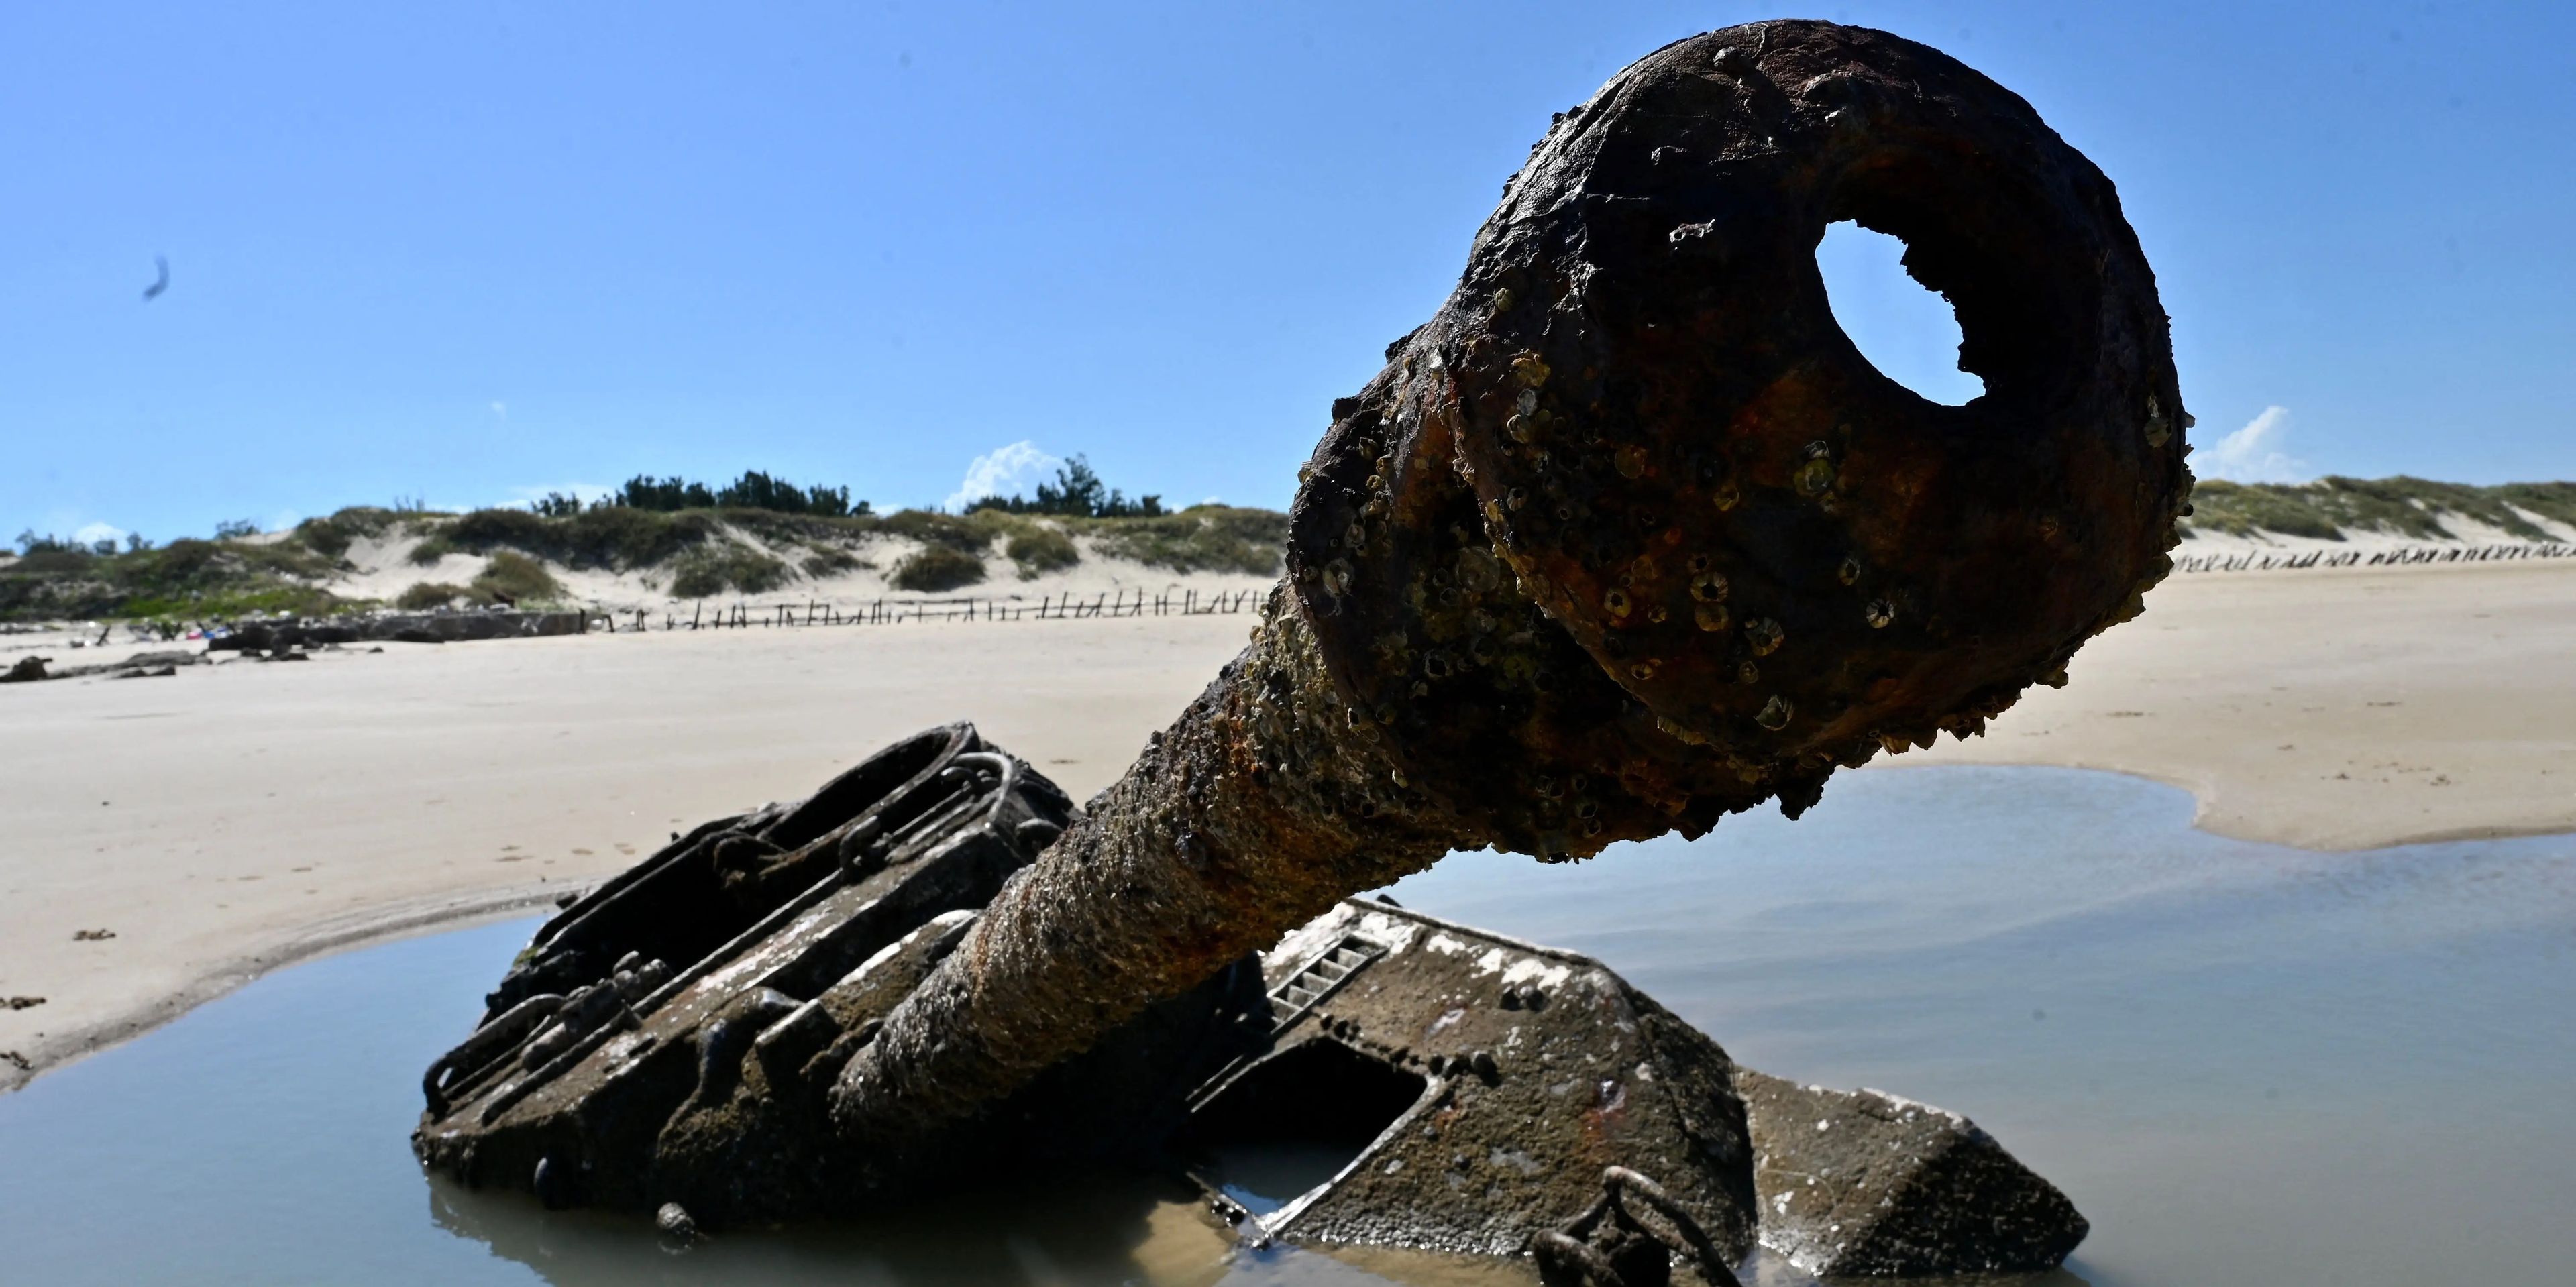 Los restos oxidados de un viejo tanque en la playa de arena de Ou Cuo, en las islas Kinmen de Taiwán, situadas a sólo 3,2 km de la costa de China continental, el 11 de agosto de 2022.